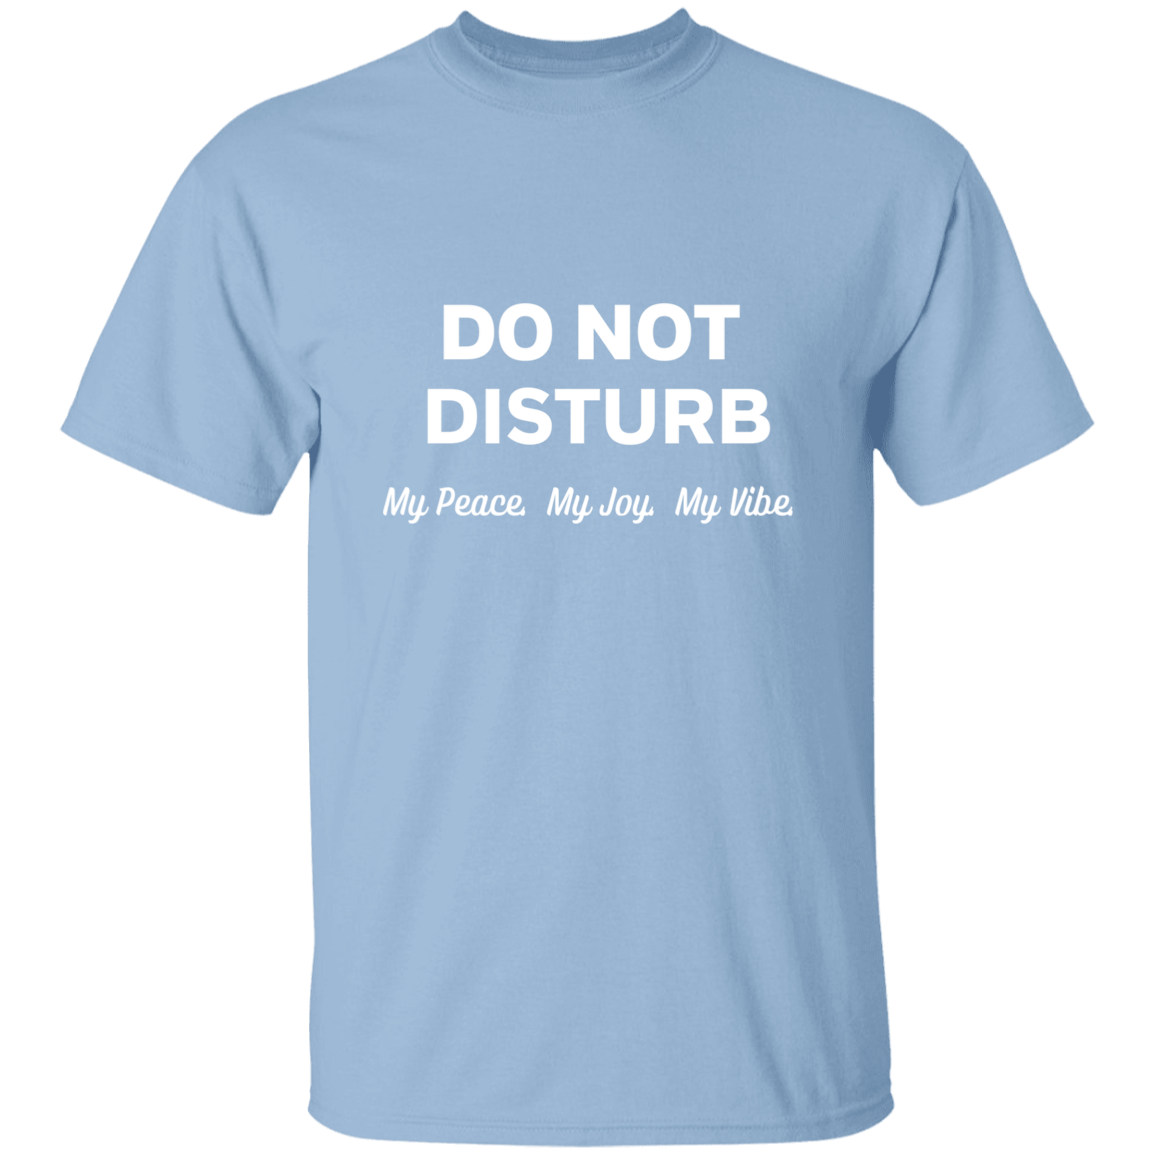 Do Not Disturb 5.3 oz. T-Shirt